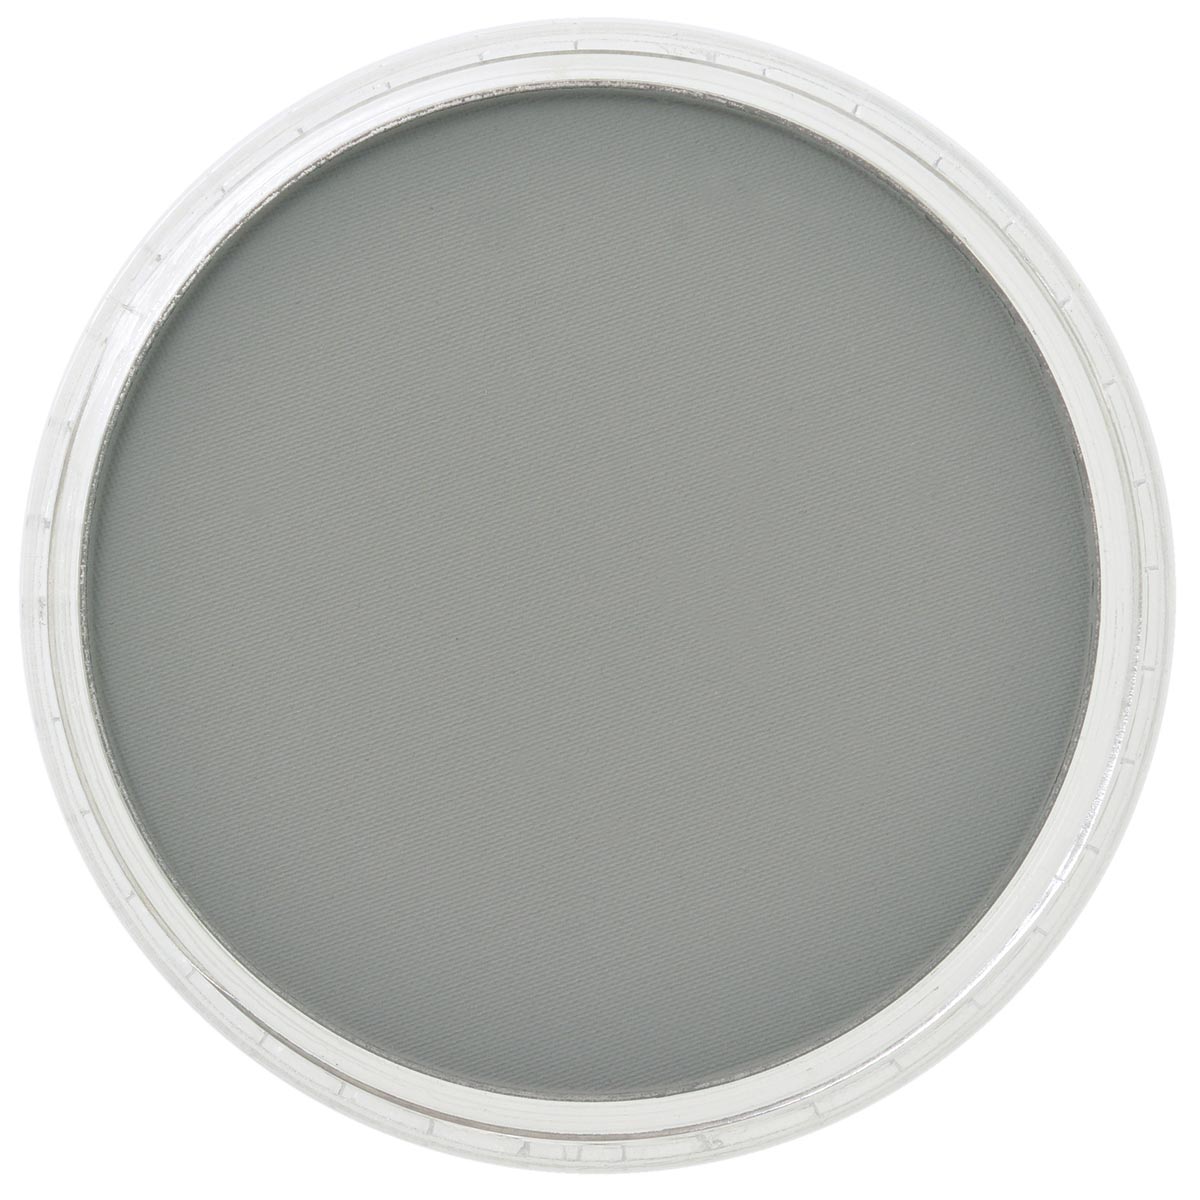 Pan Pastel Neutral Grey Shade 820.3